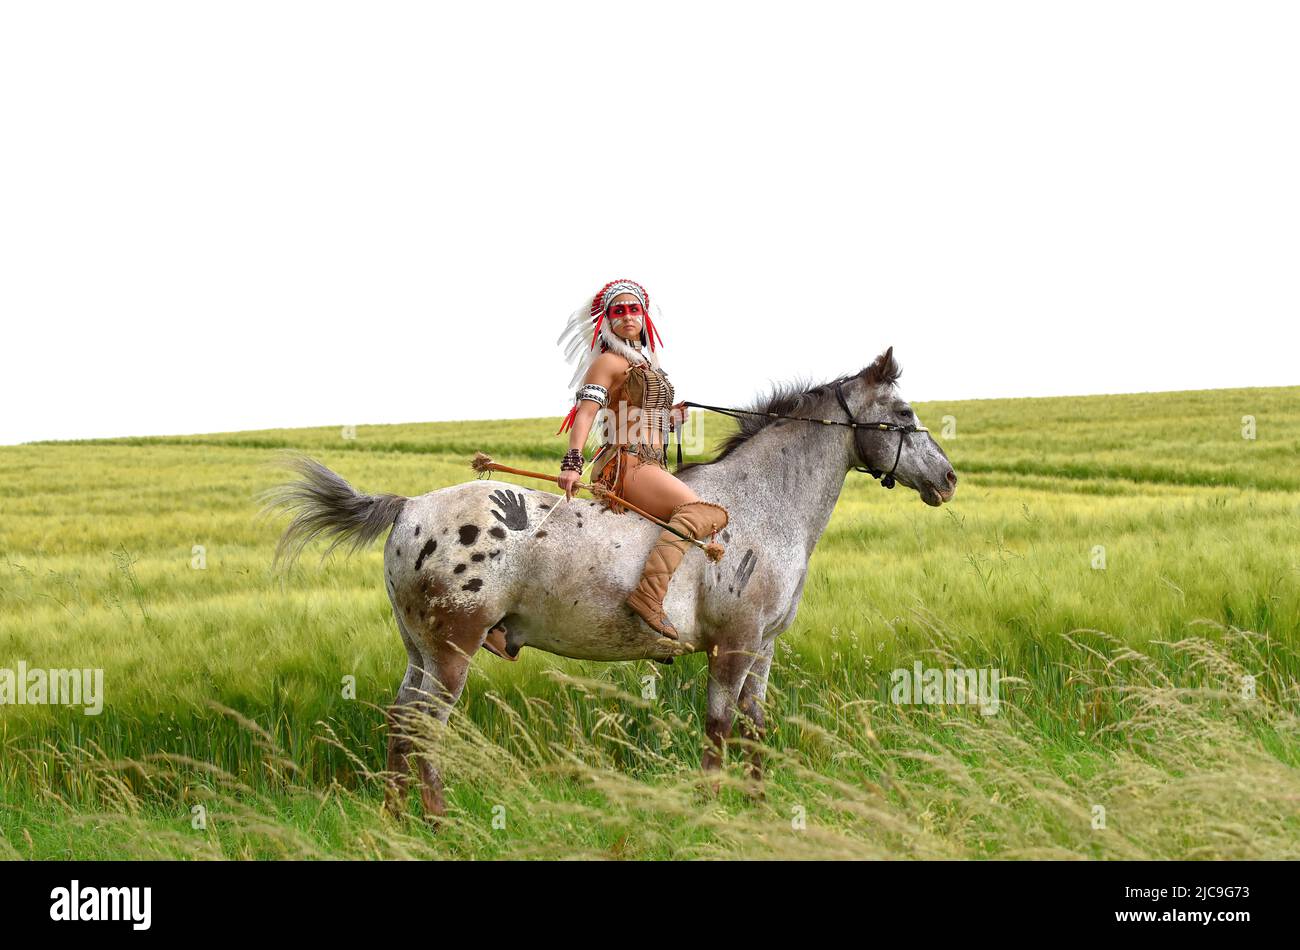 Une femme indienne amérindienne est vue dans la prarie avec son poney. Elle est habillée de vêtements indiens traditionnels et porte une guerre à plumes bonne Banque D'Images